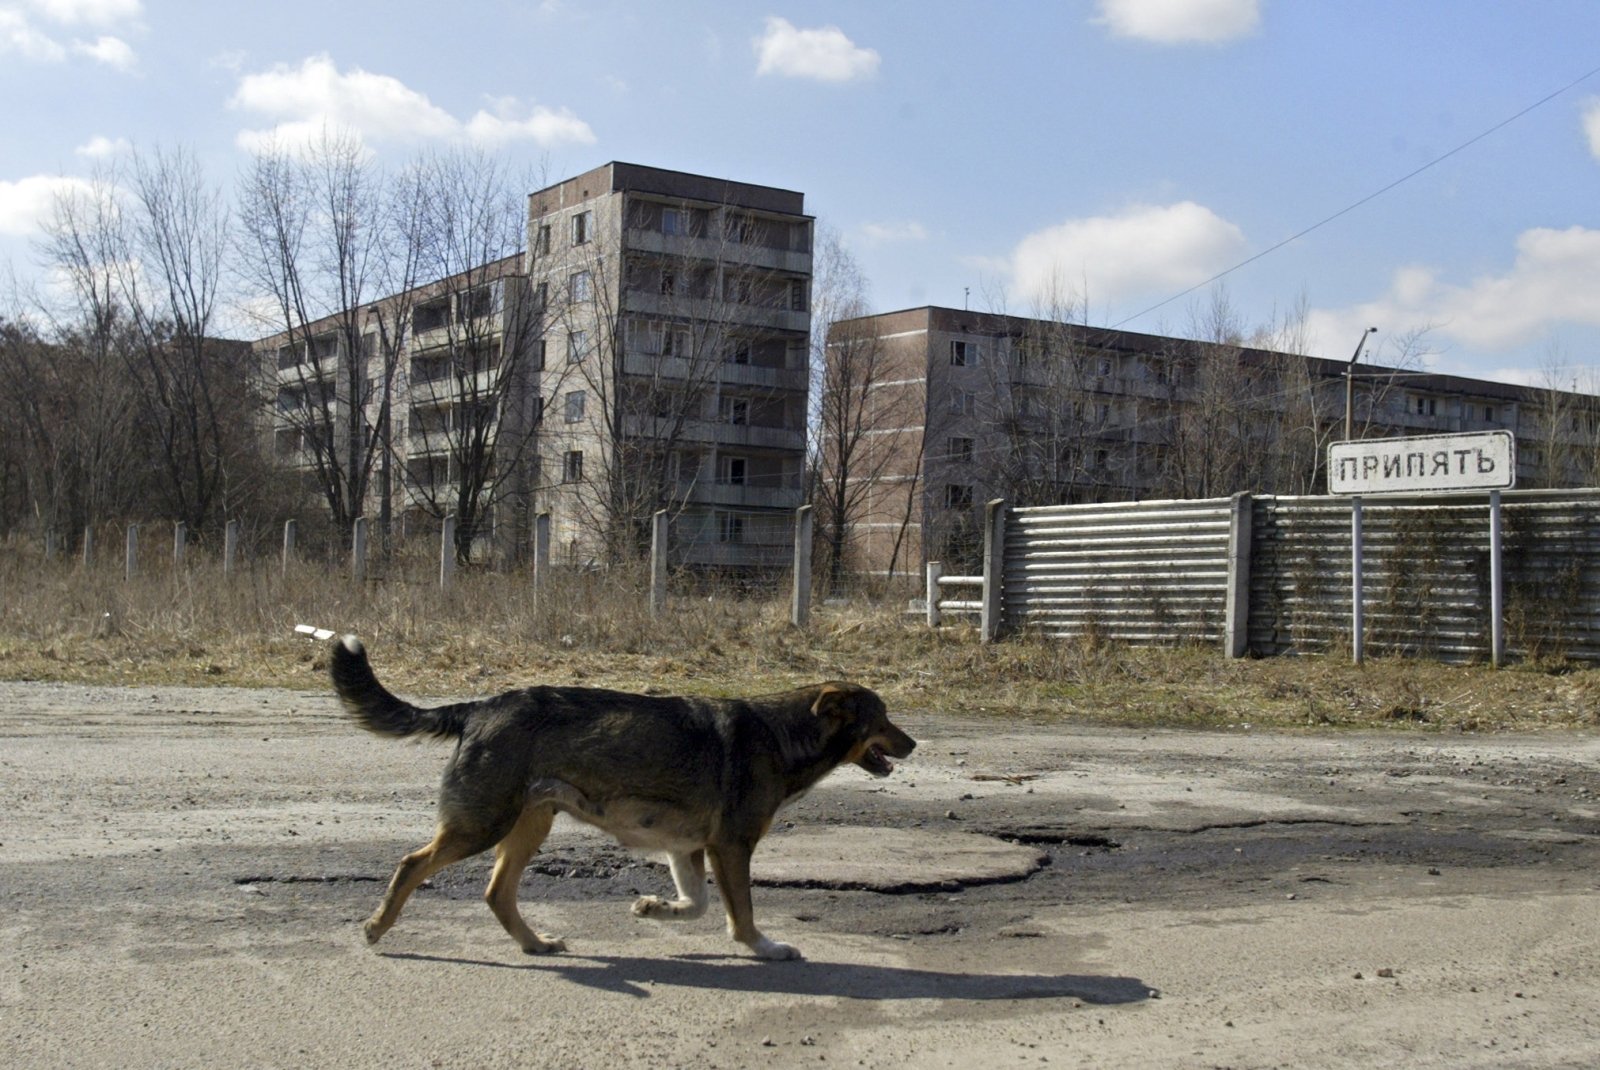 Как жили в чернобыле. Припять зона отчуждения. Зона отчуждения Чернобыльской АЭС Припять. Чернобыль город призрак. Город призрак Припять животные.